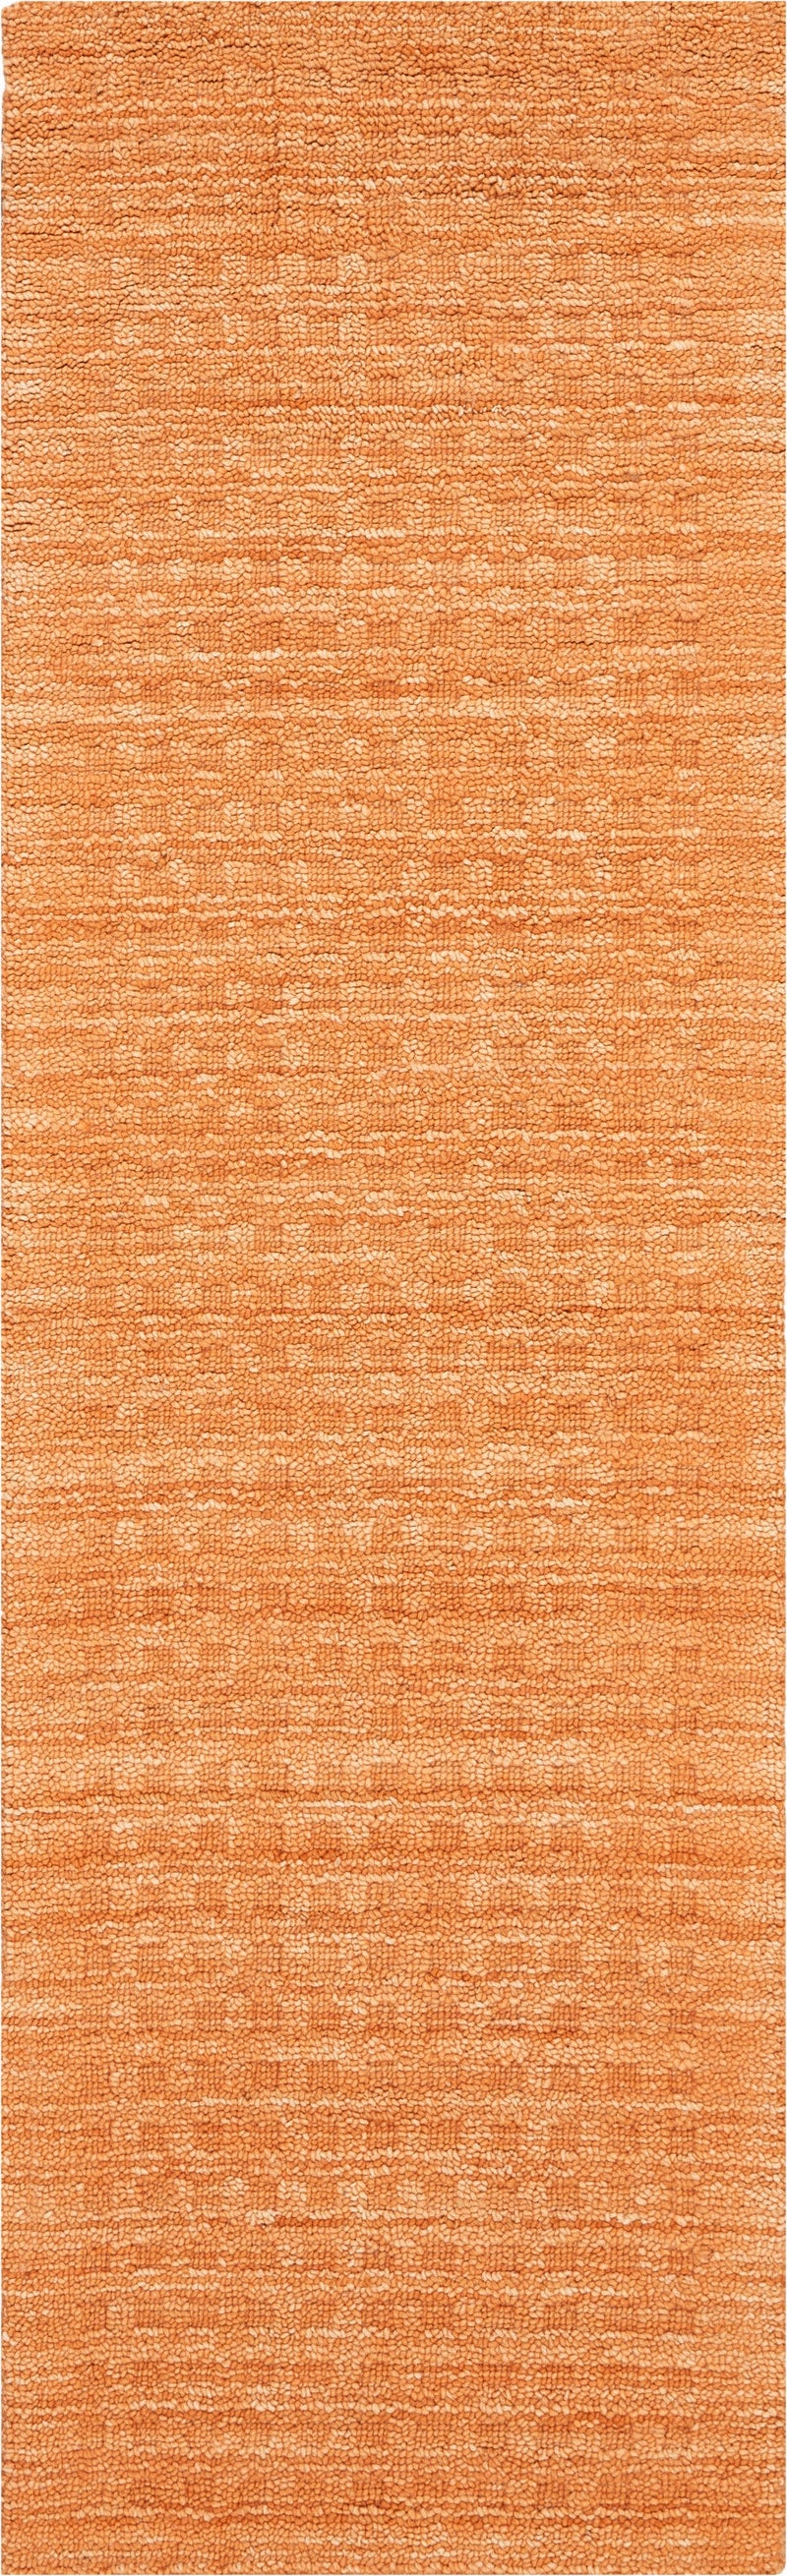 media image for marana handmade sunset rug by nourison 99446400604 redo 2 265